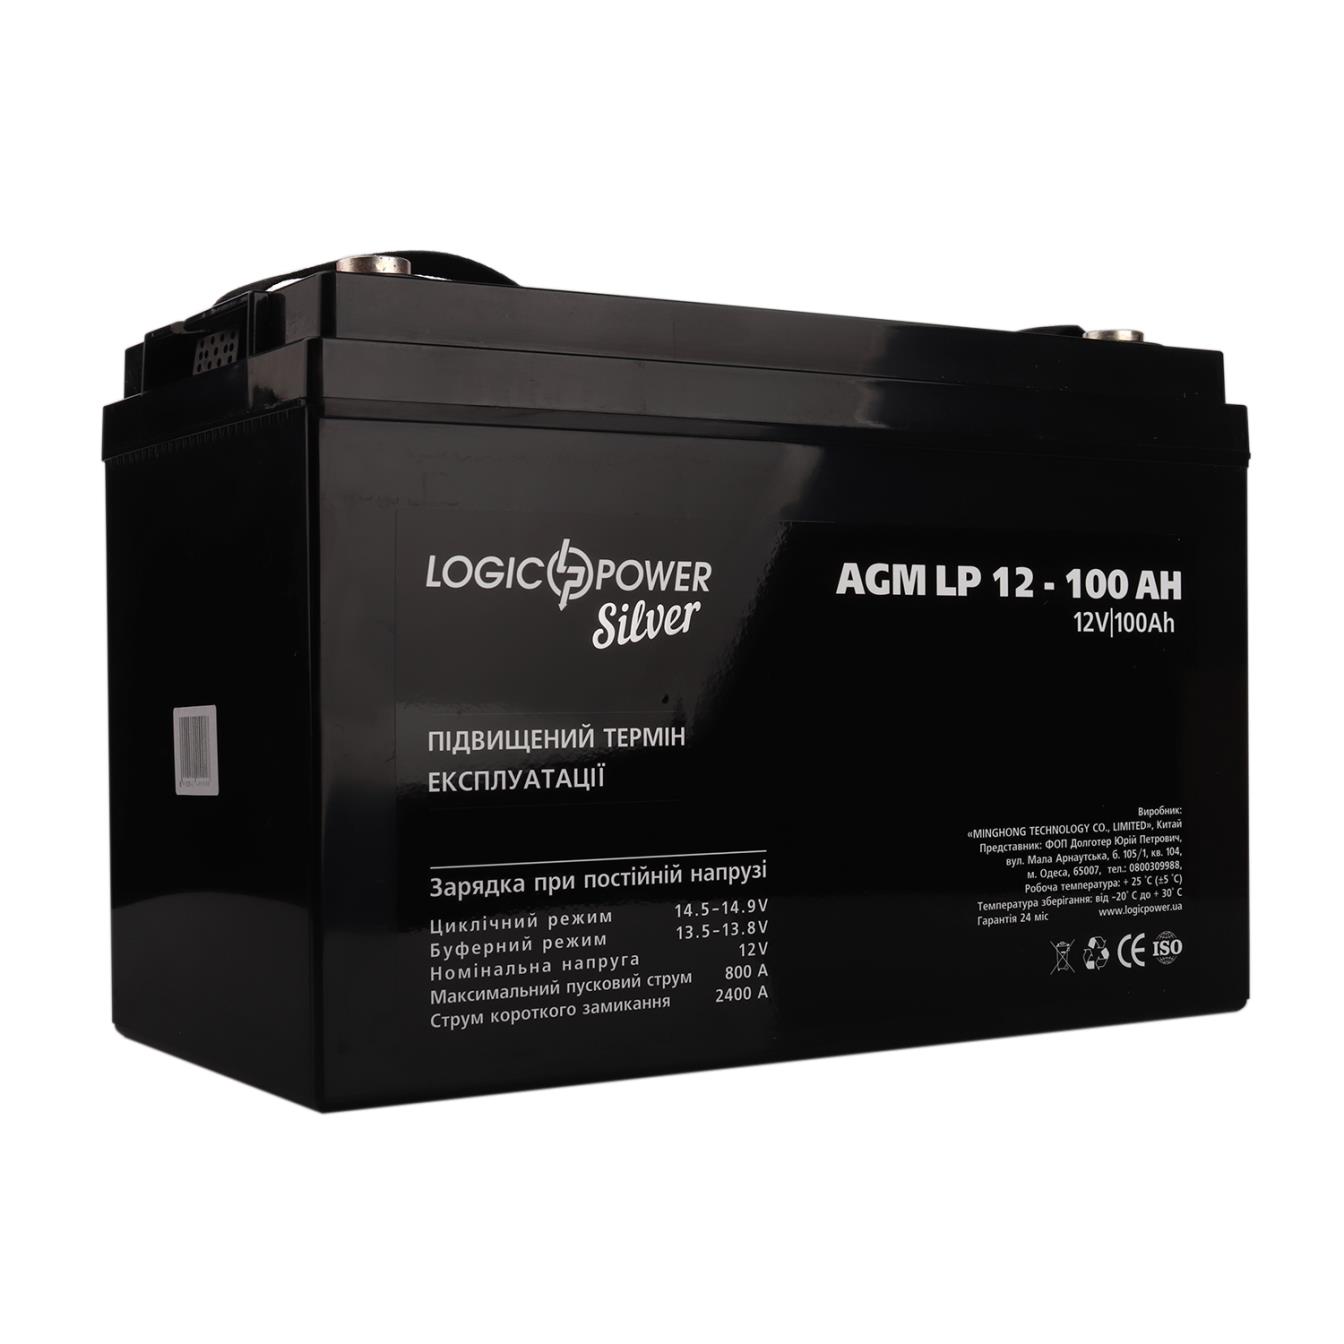 LogicPower AGM LP 12V - 100 Ah Silver (4240)